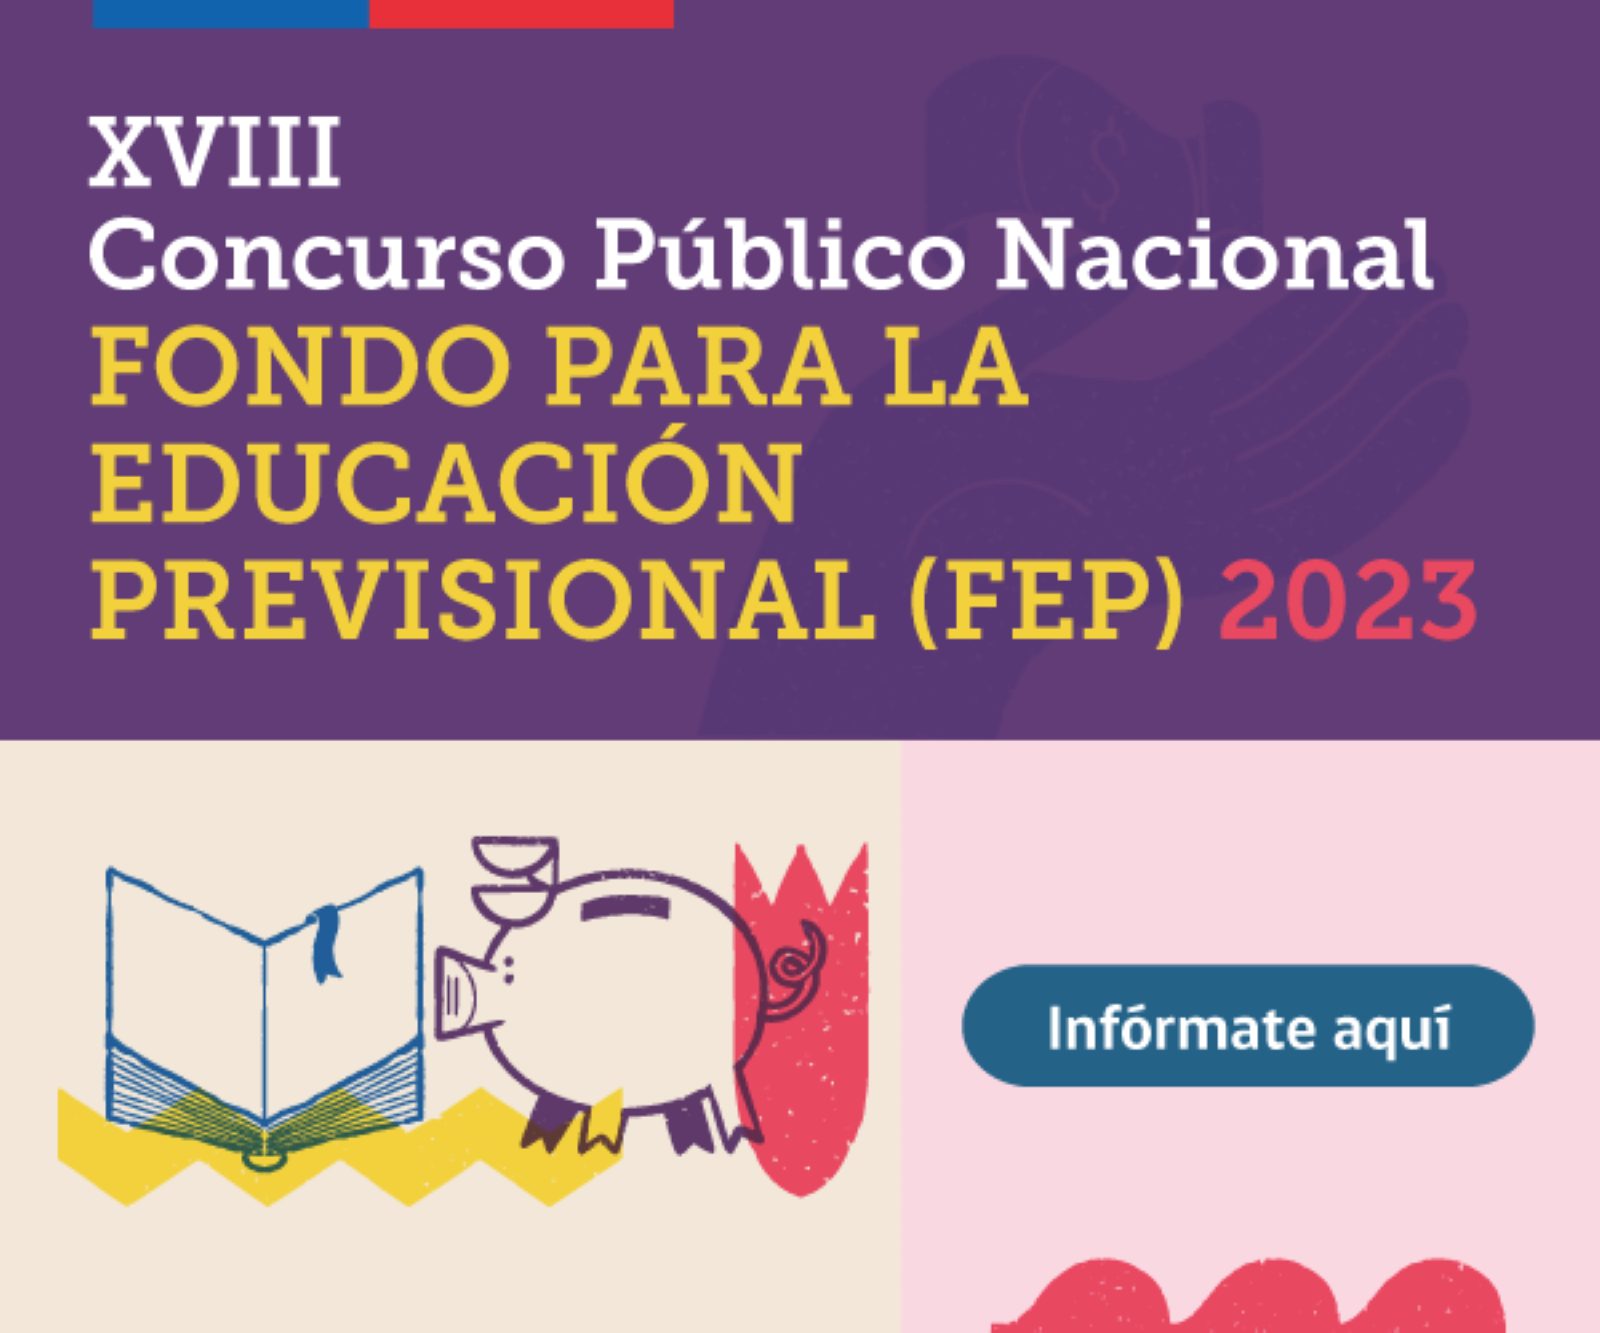 Subsecretaría de Previsión Social inicia proceso de postulaciones al concurso Fondo para la Educación Previsional FEP 2023